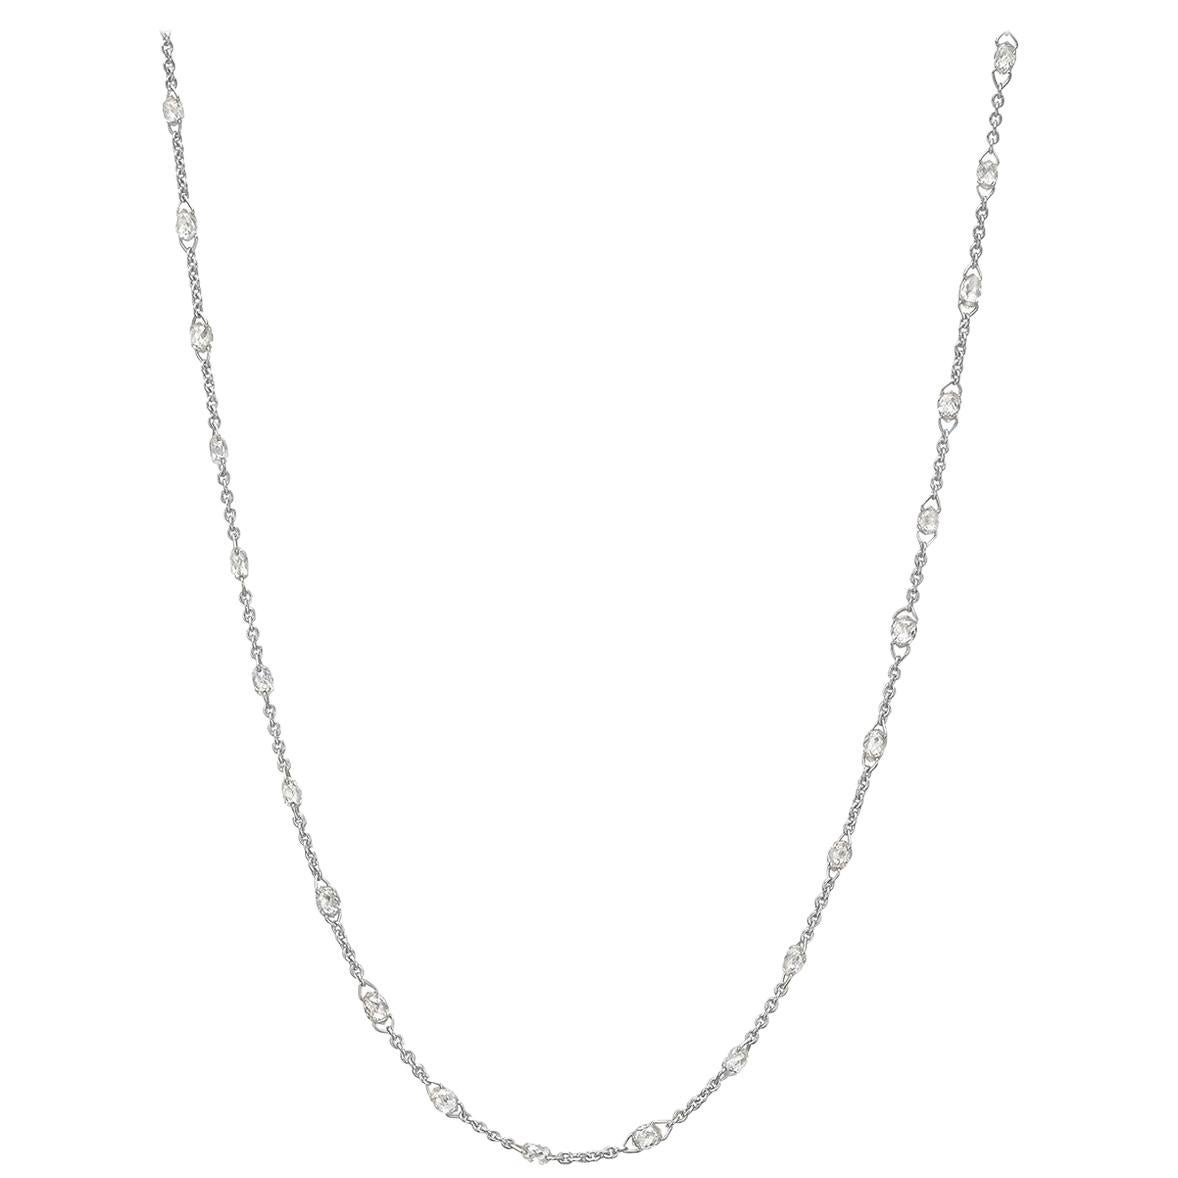 Briolette-Cut Diamond Chain Necklace '3.38 Carat' For Sale